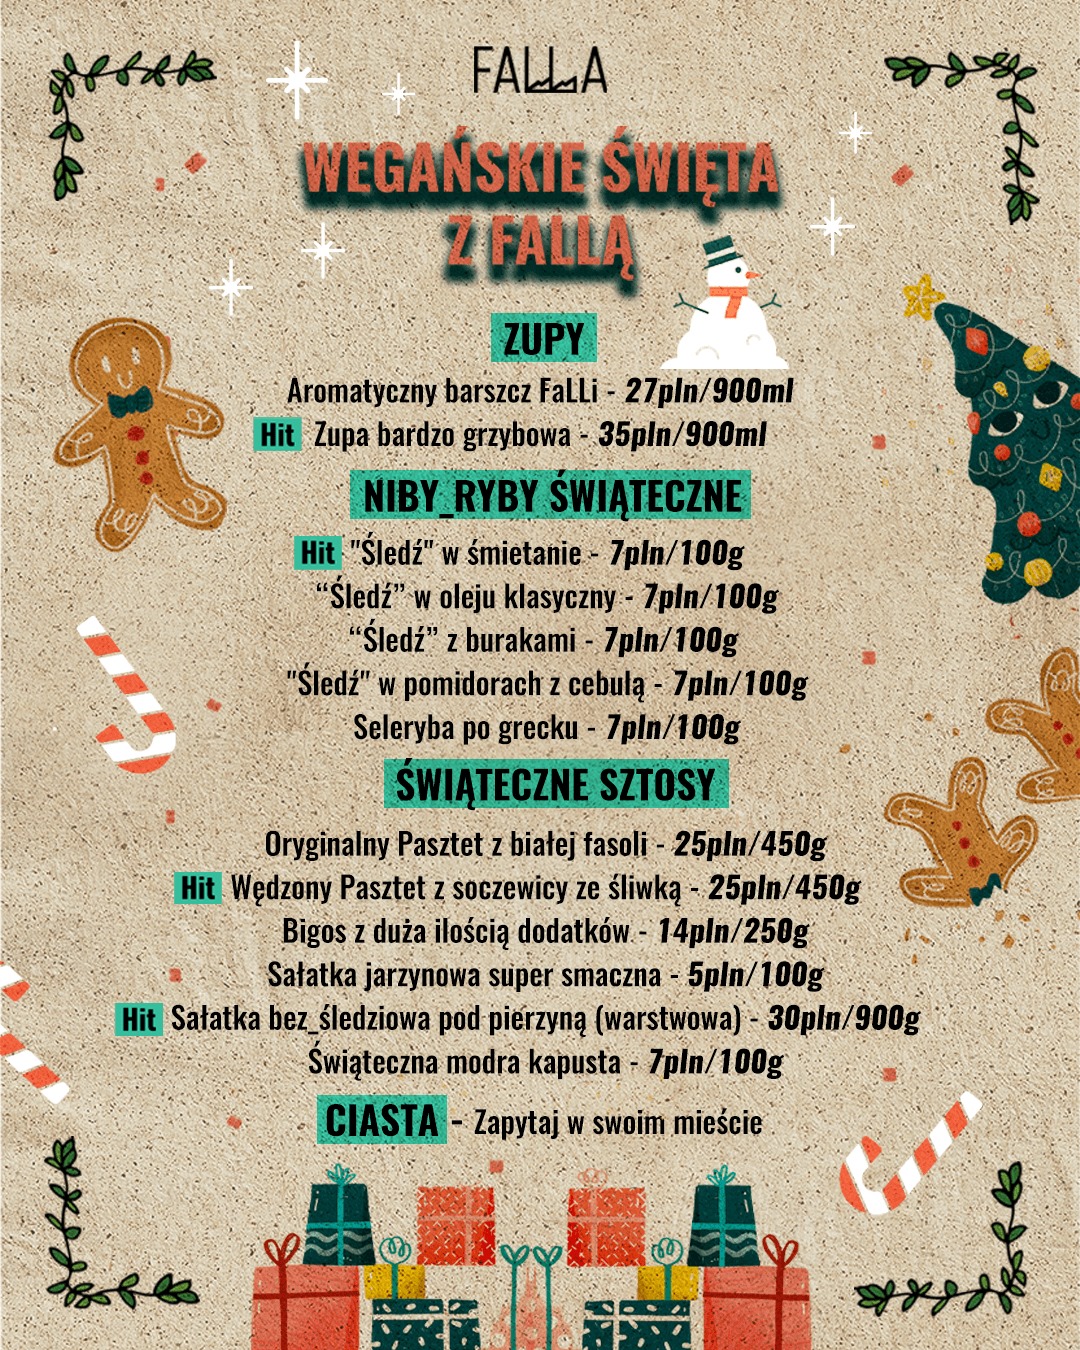 Przegląd oferty świątecznej w warszawskiej gastronomii!